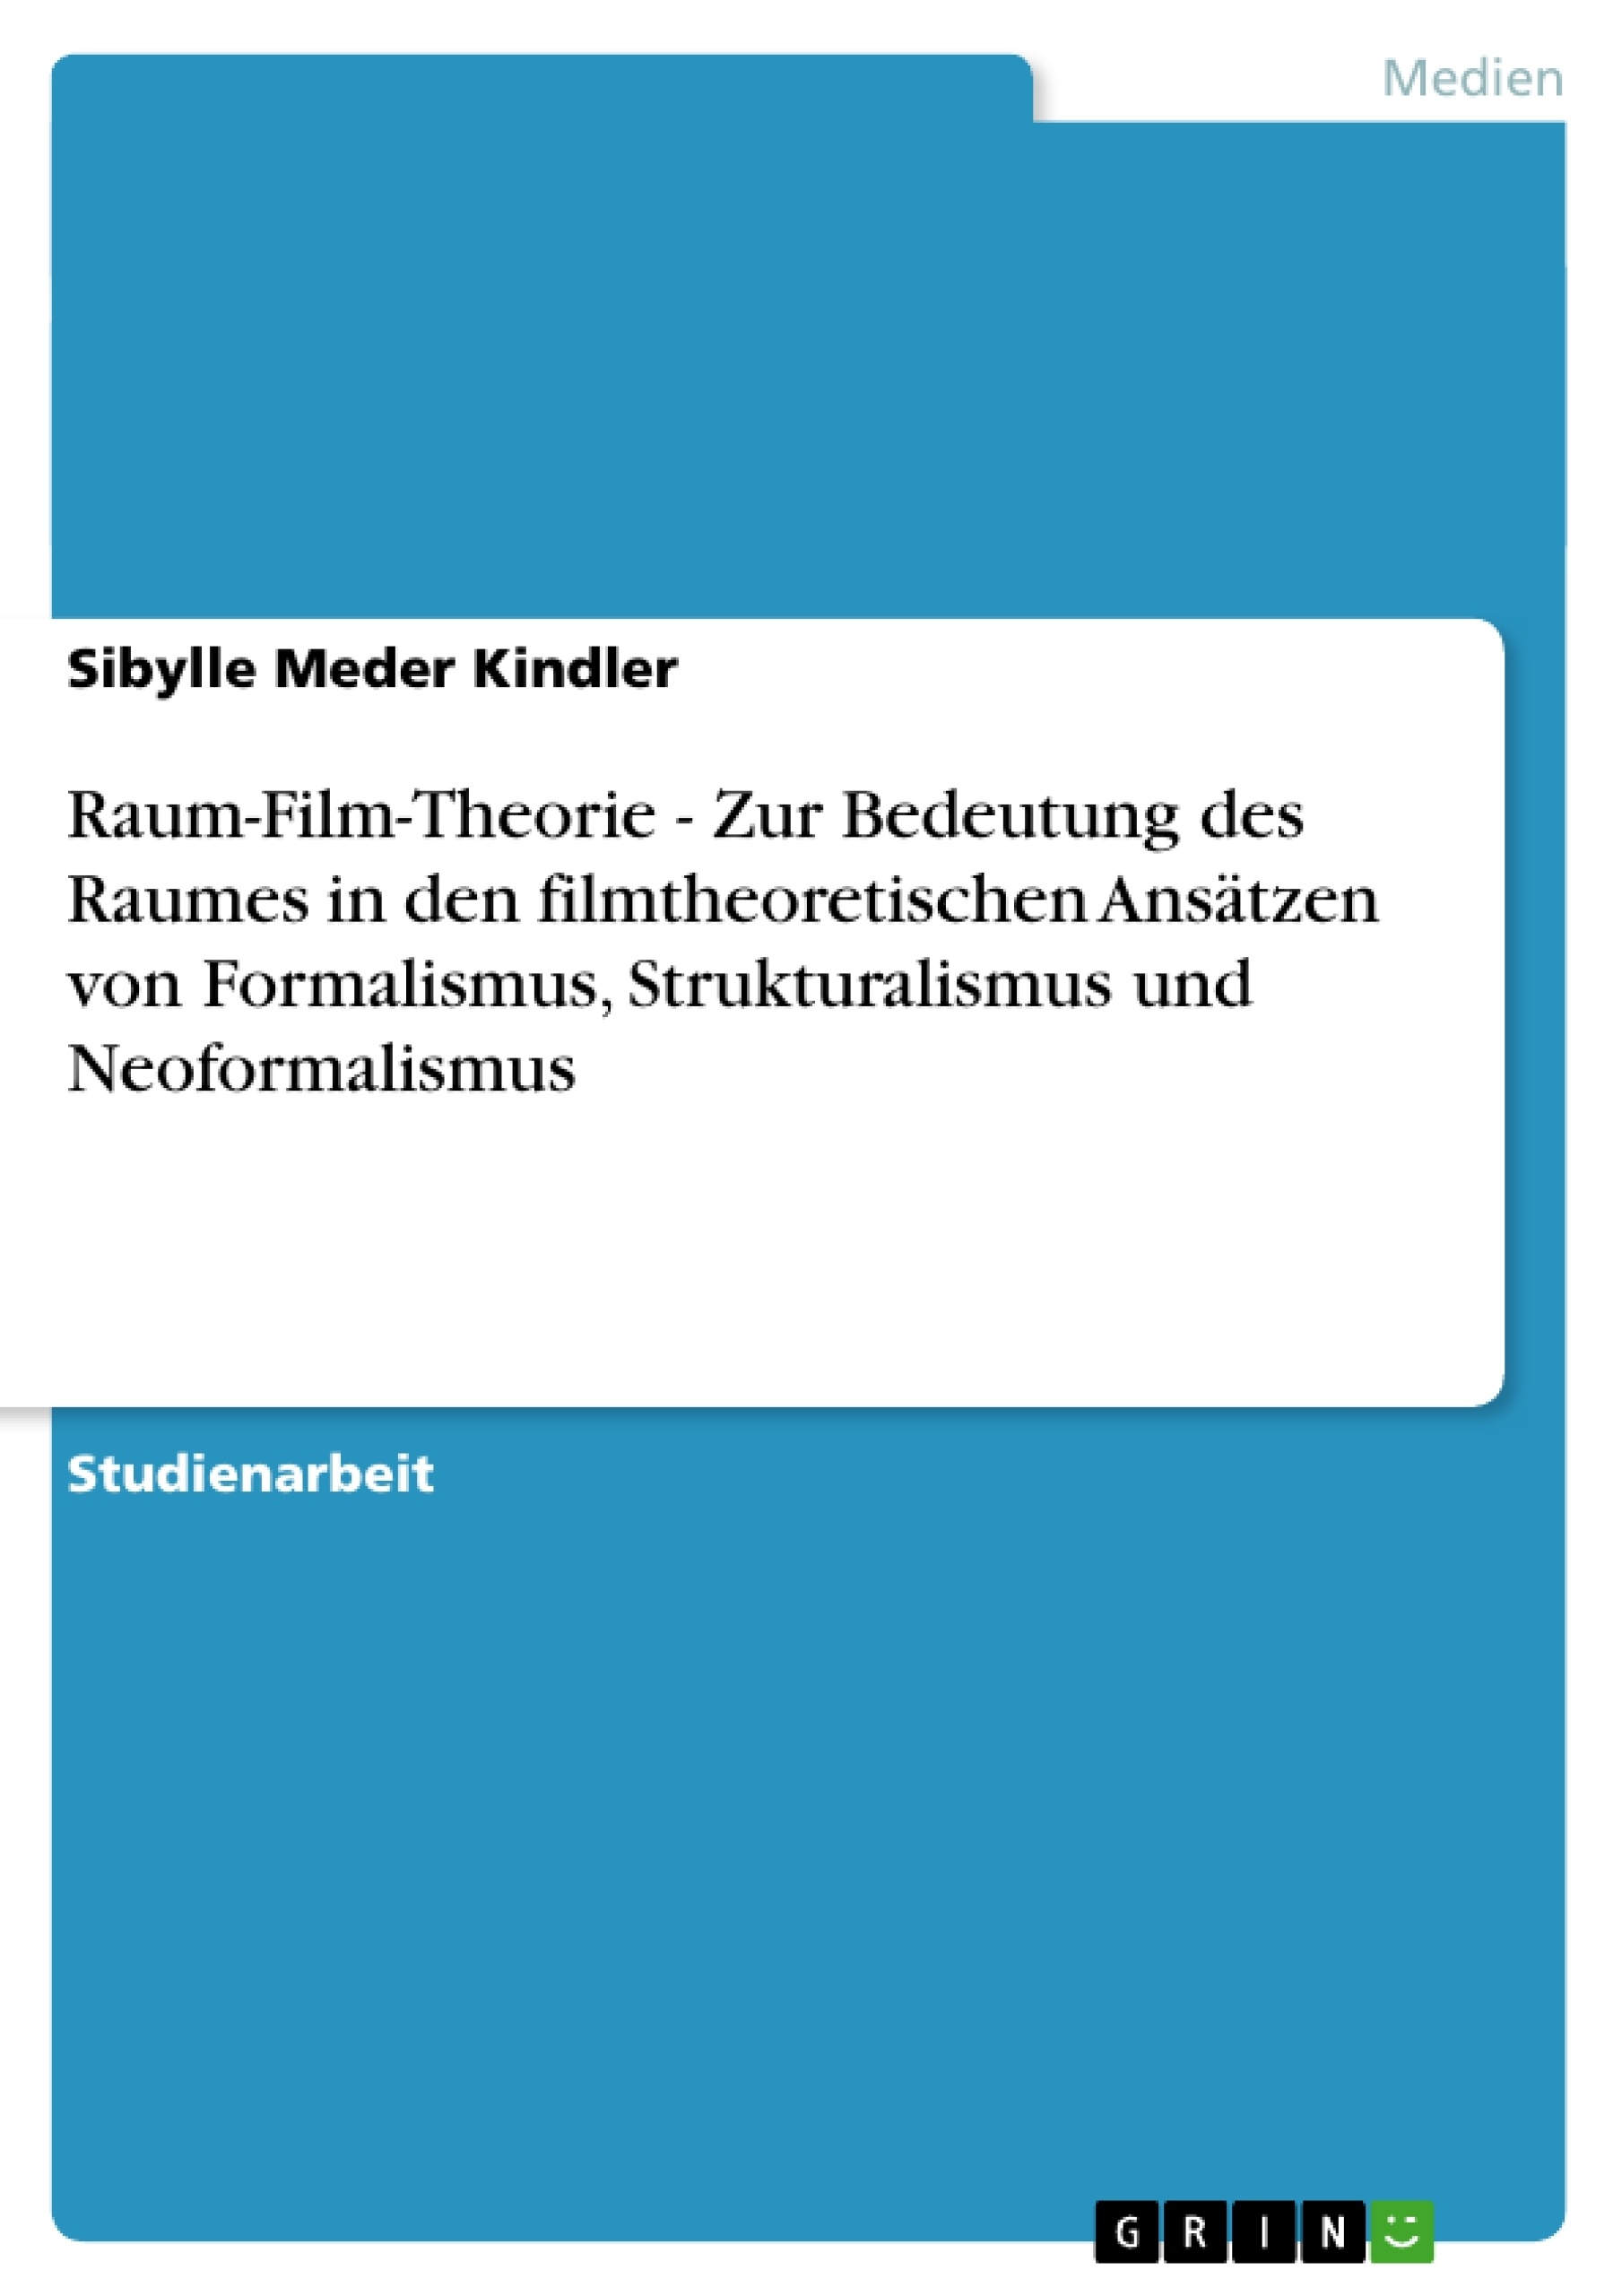 Title: Raum-Film-Theorie - Zur Bedeutung des Raumes in den filmtheoretischen Ansätzen von Formalismus, Strukturalismus und Neoformalismus